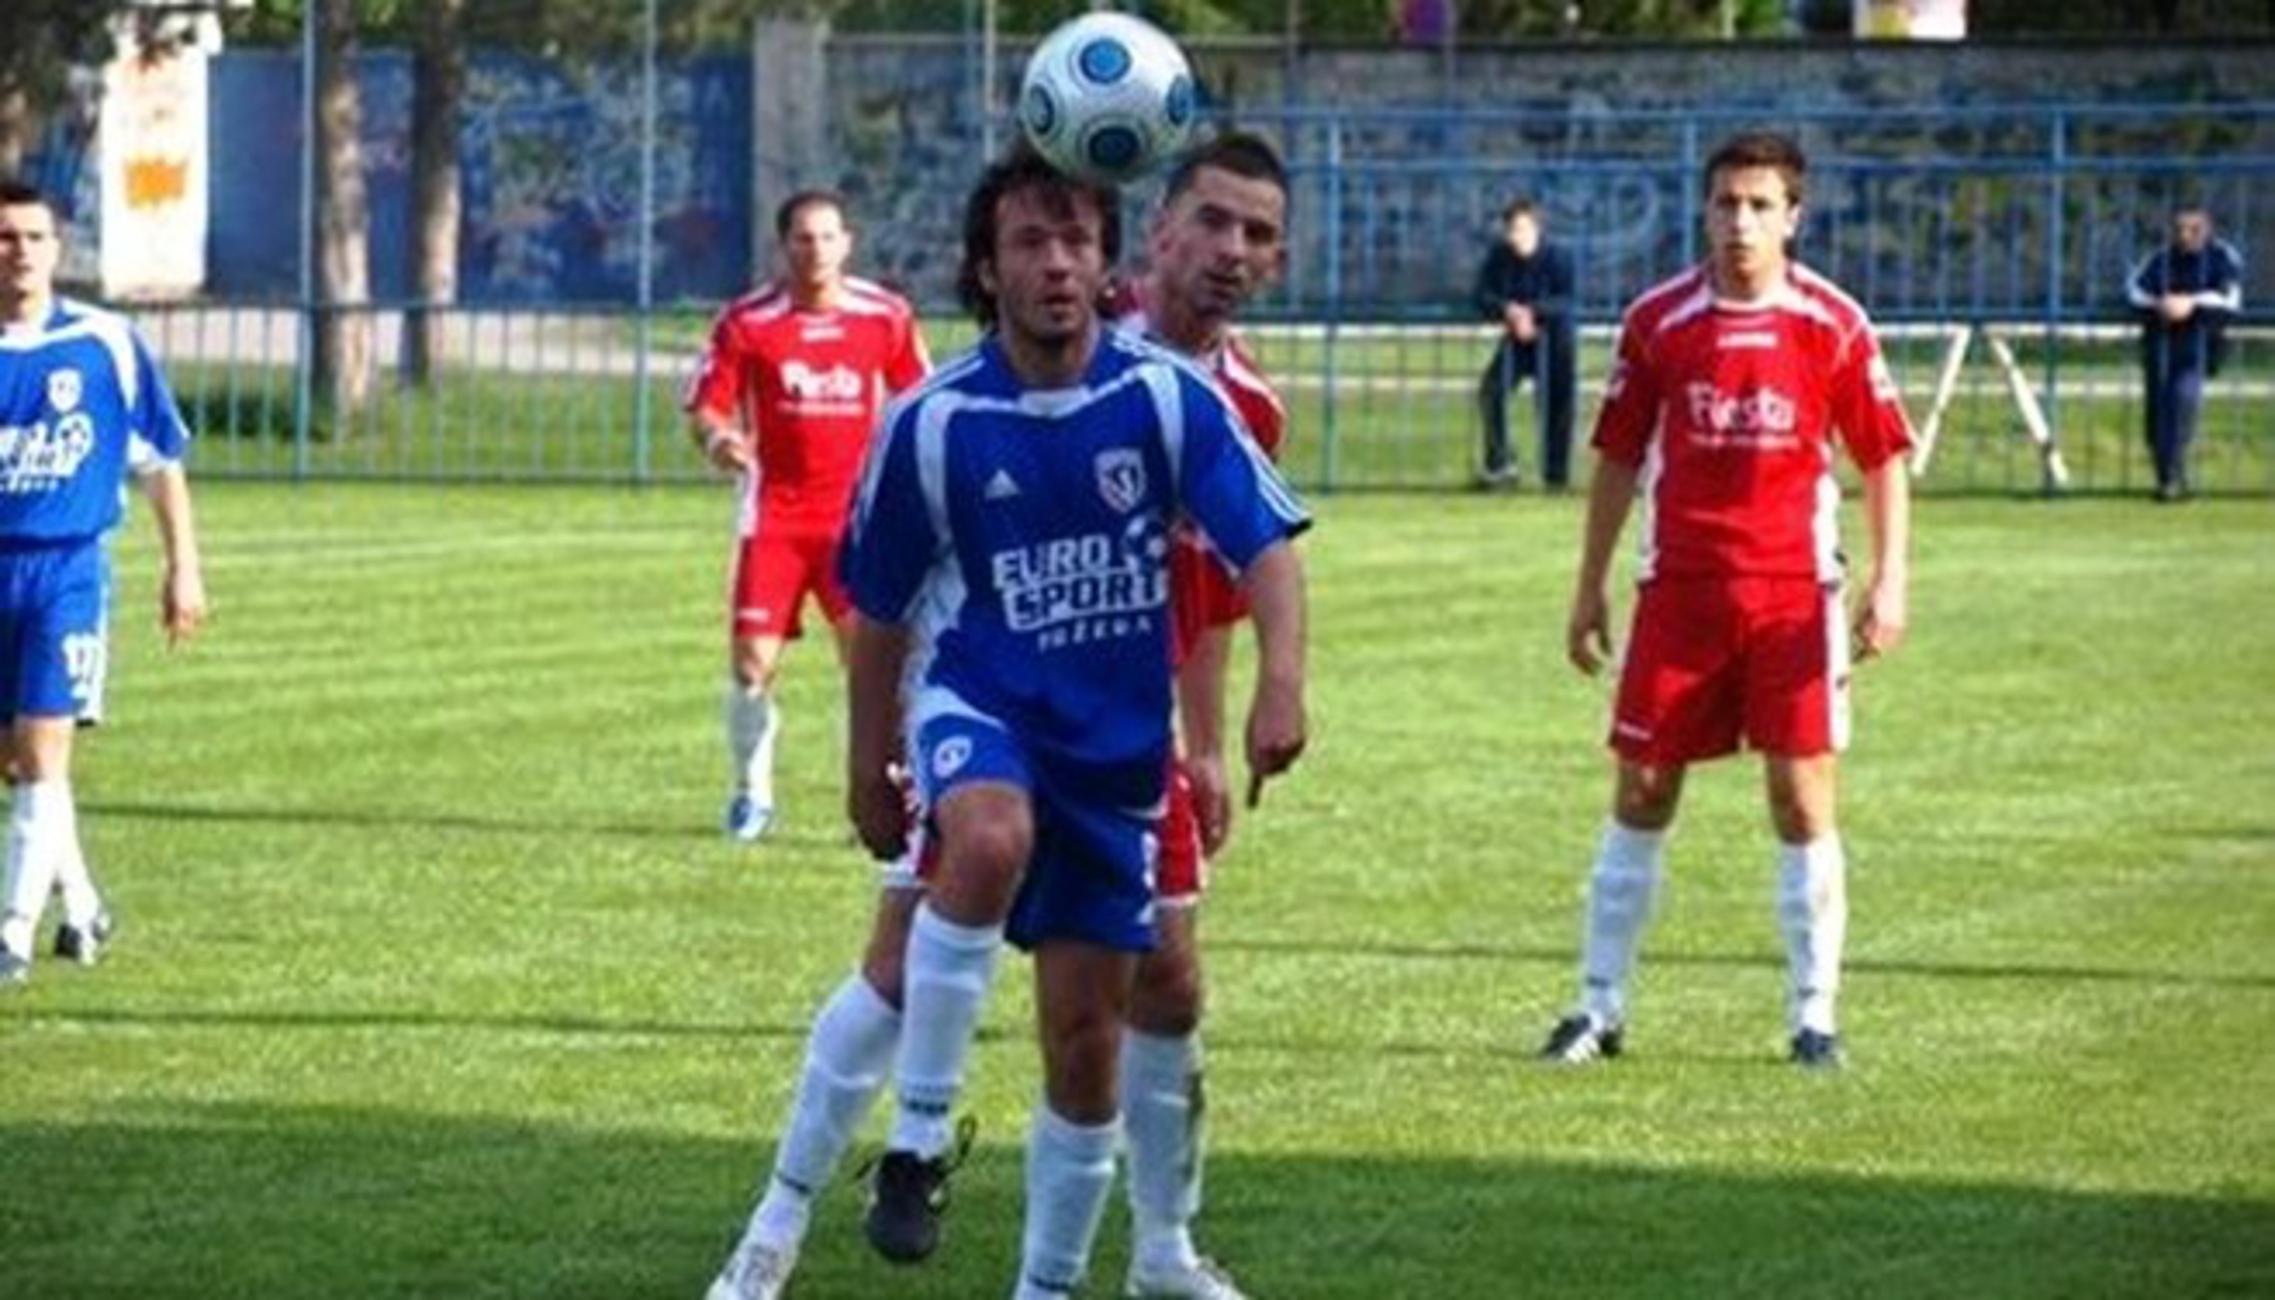 Nogometaši Oriolika (crveni) u utakmici sa Slavonijom Požega